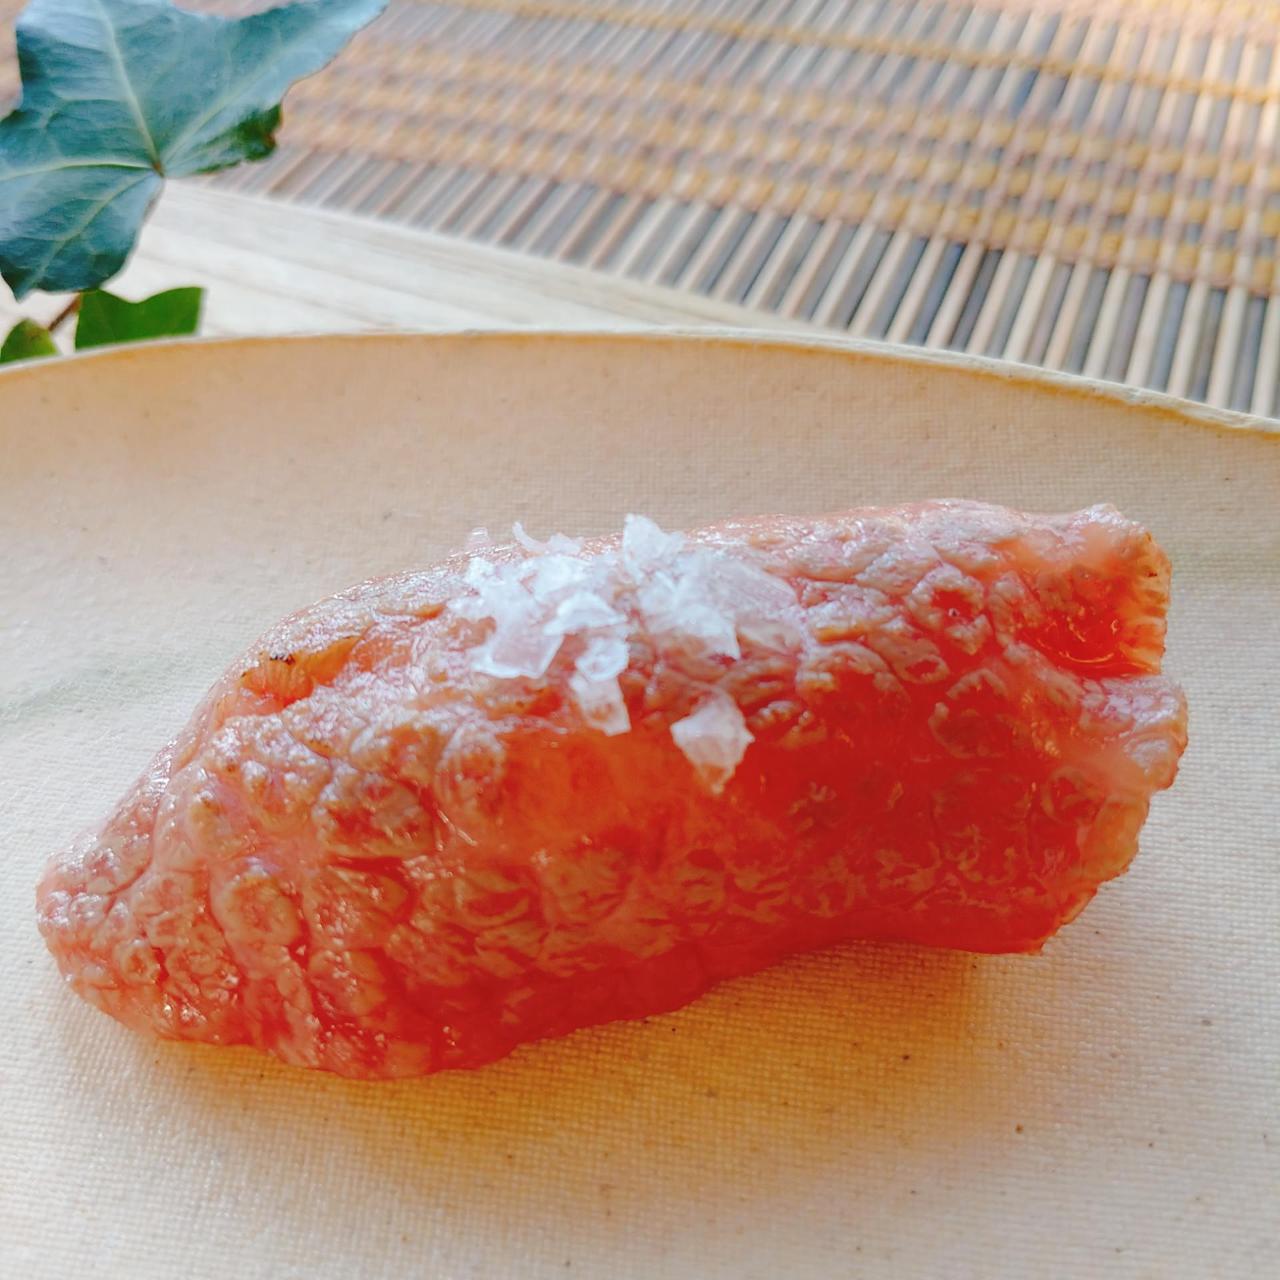 とちぎ和牛専門店の牛肉の炙りお寿司は旨みととろける味わい